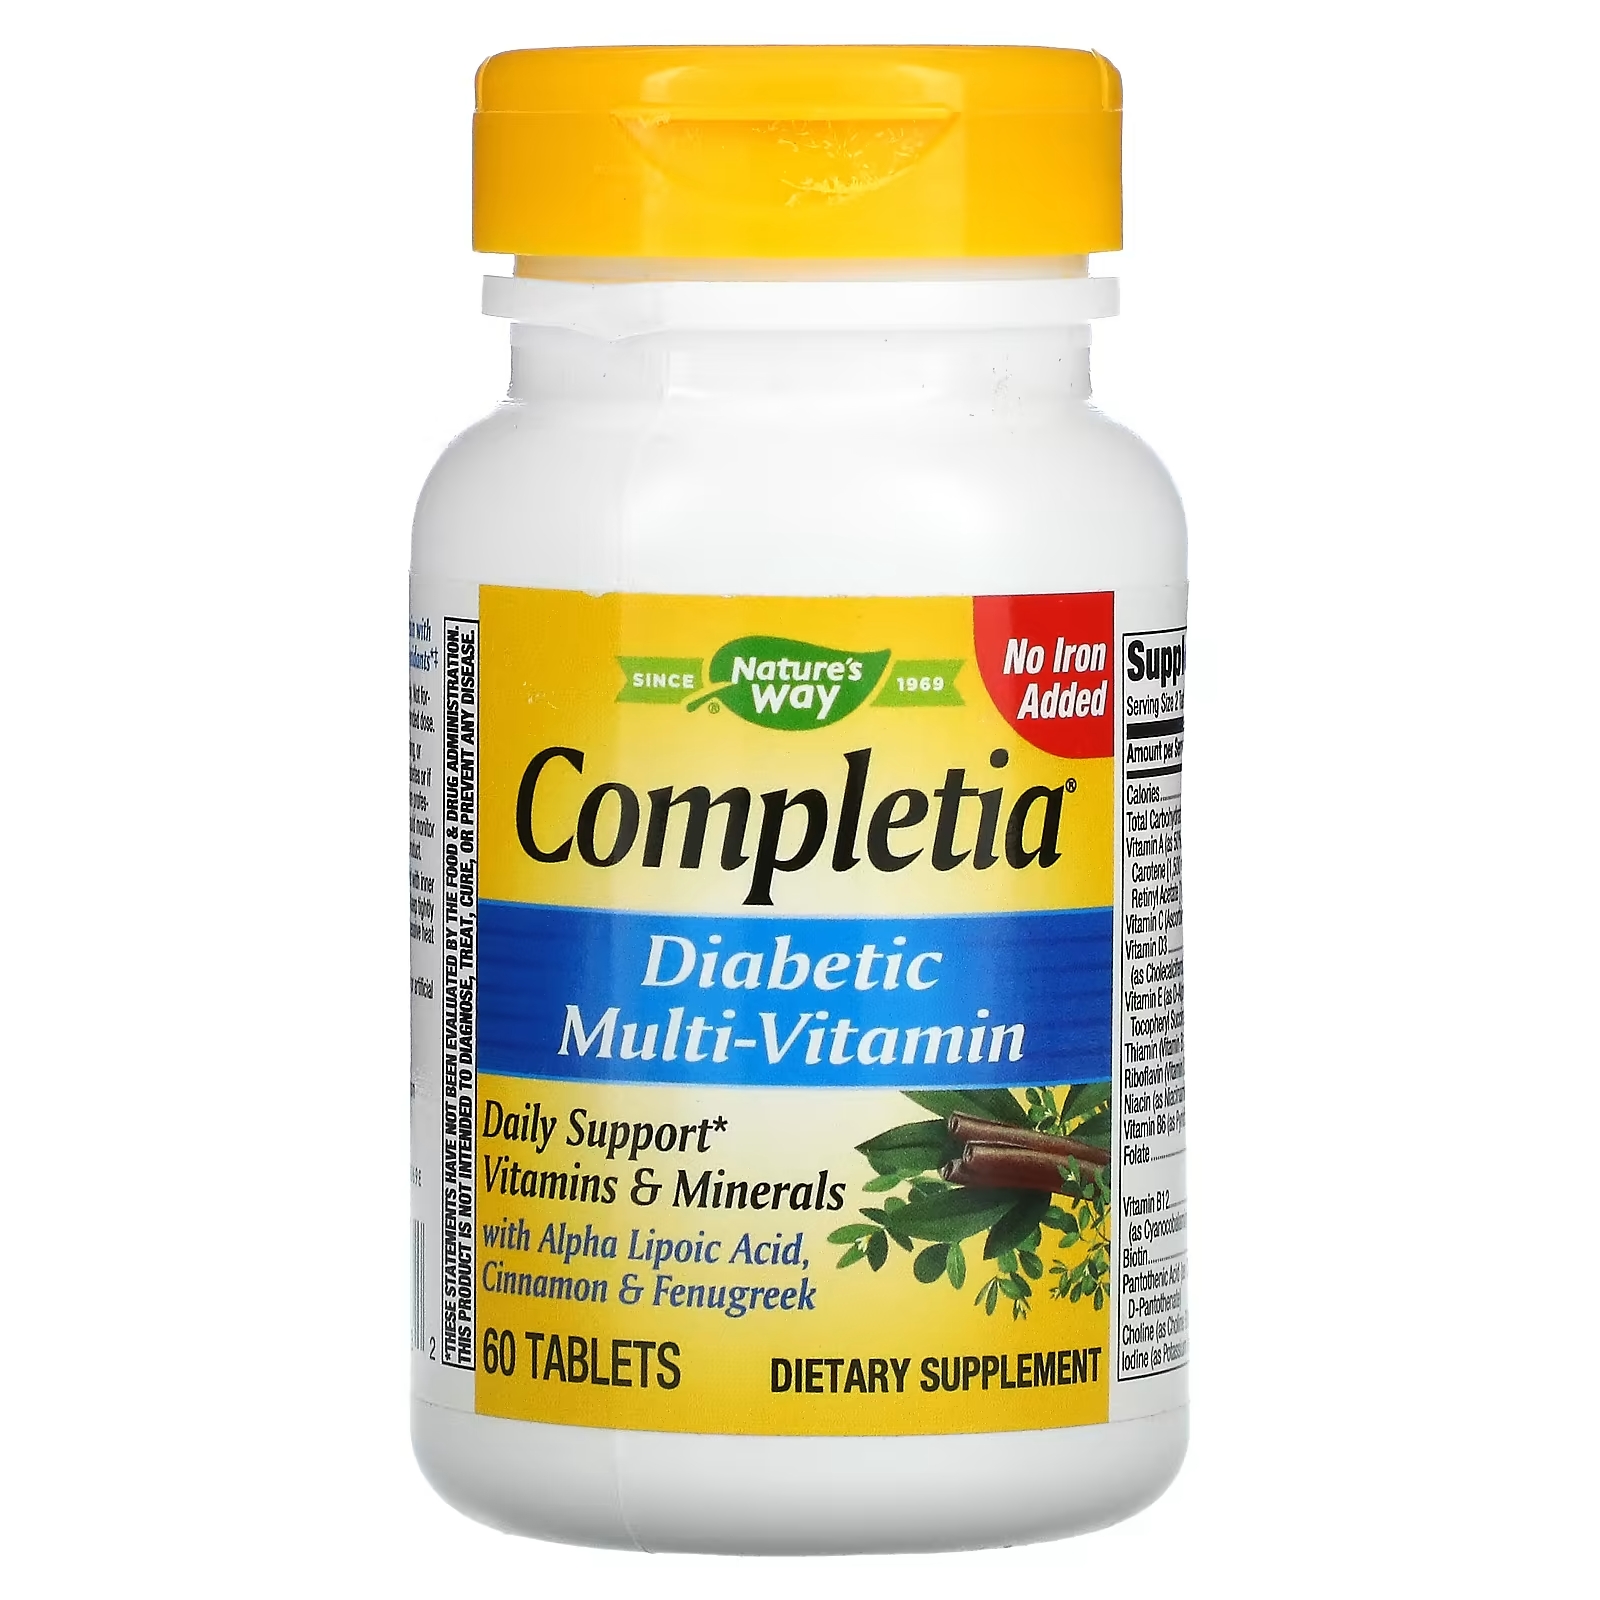 Nature's Way Completia мультивитаминный комплекс для диабетиков без спирта железа, 60 таблеток nature s way completia мультивитаминный комплекс для диабетиков не содержит железа 60 таблеток